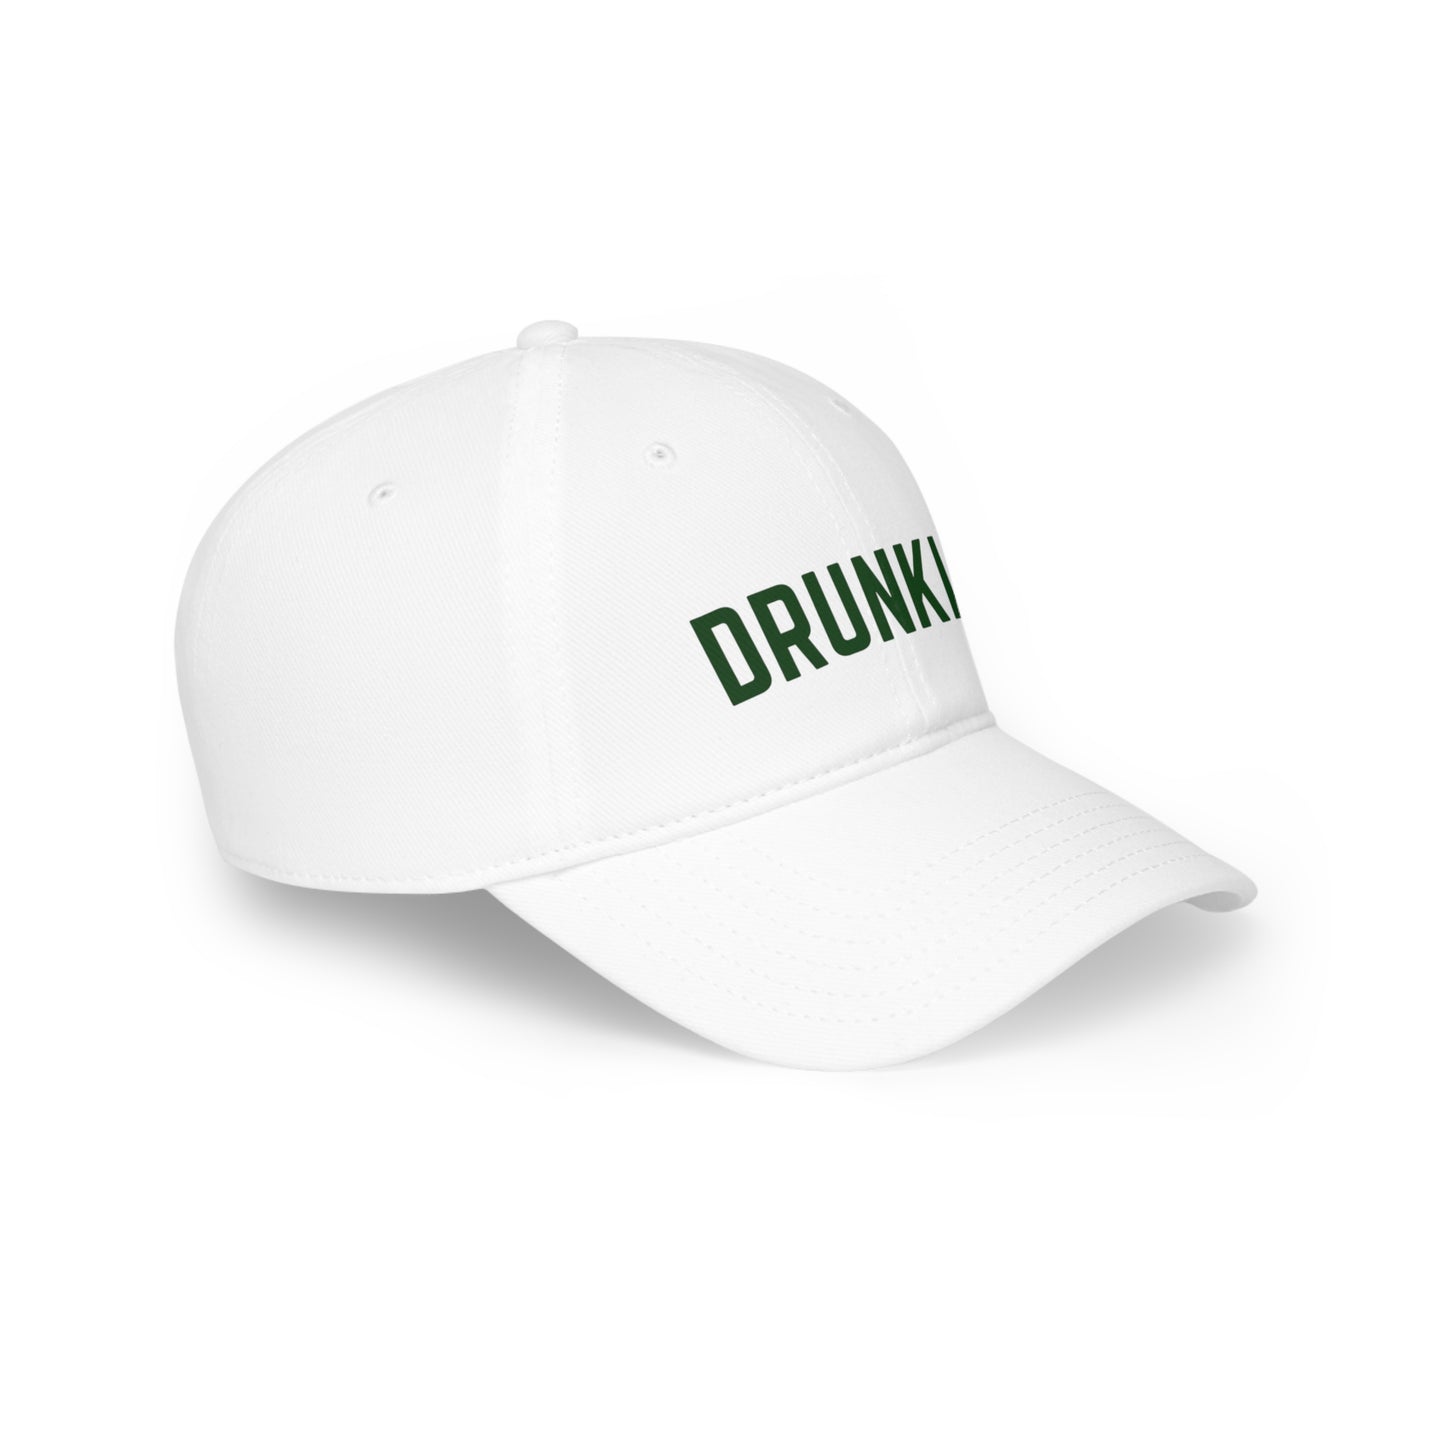 "Drunkle" Hat